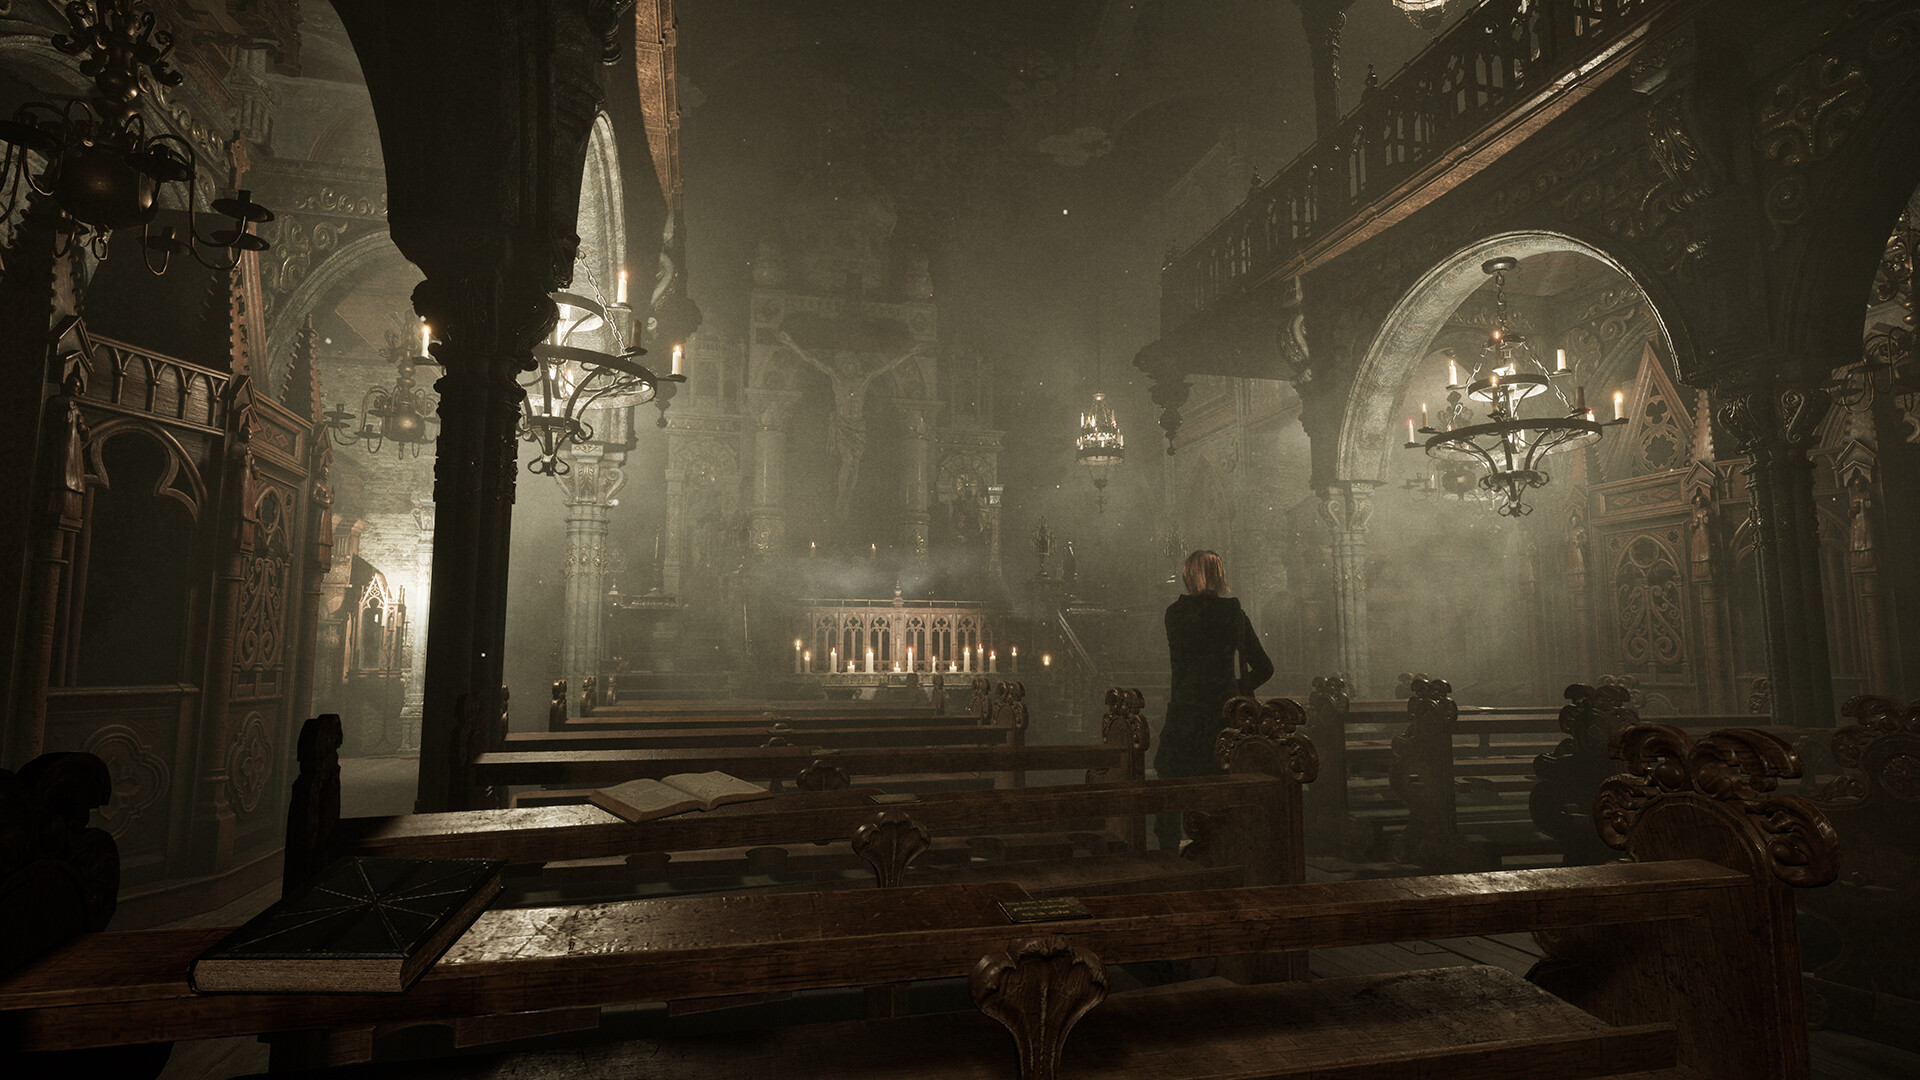 Tormented Souls 2 arribarà en format físic a PlayStation 5